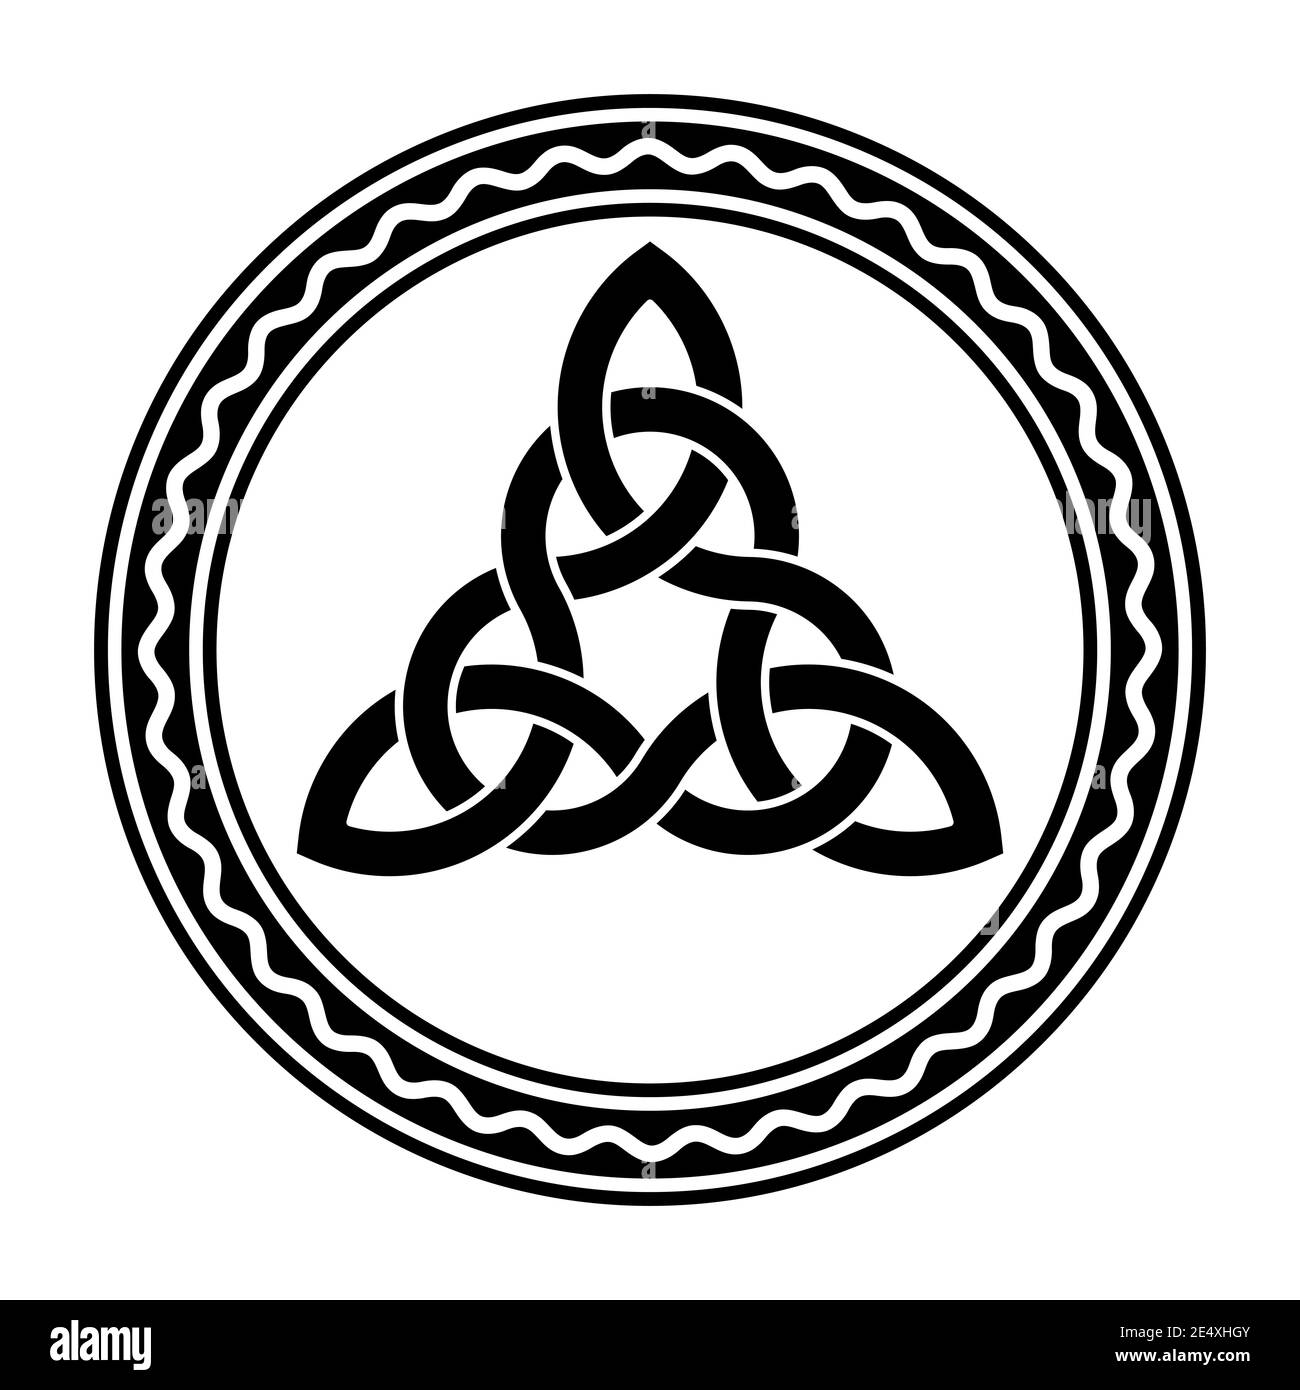 Verflochtenes Triquetra, ein keltischer Knoten, in einem Kreisrahmen mit weißer Wellenlinie. Dreieckige Figur in alten christlichen Ornamentik verwendet. Stockfoto